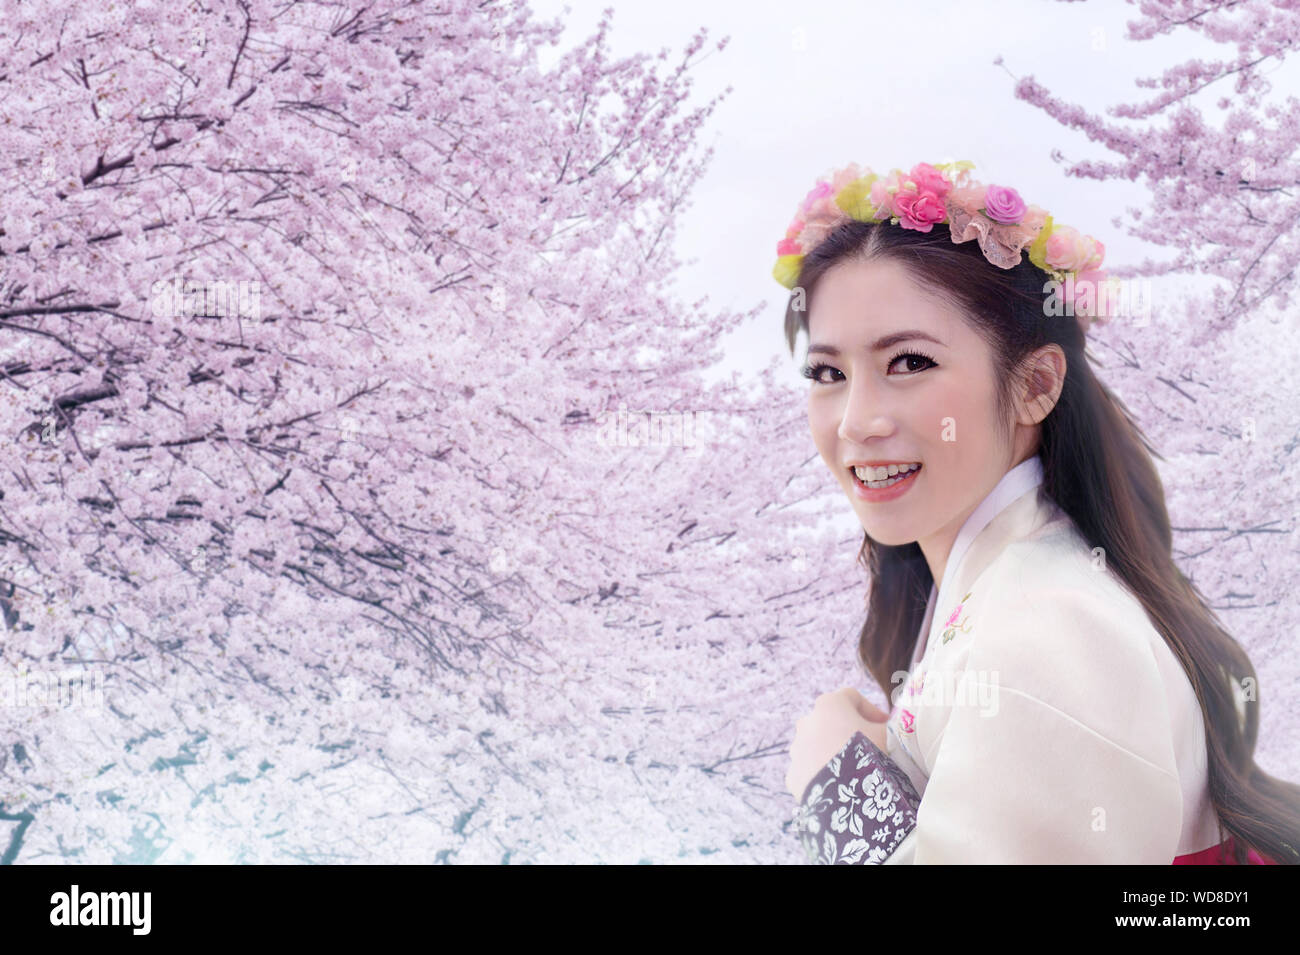 Retrato de mujer sonriente vistiendo Hanbok tradición contra el árbol de cerezo en flor Foto de stock